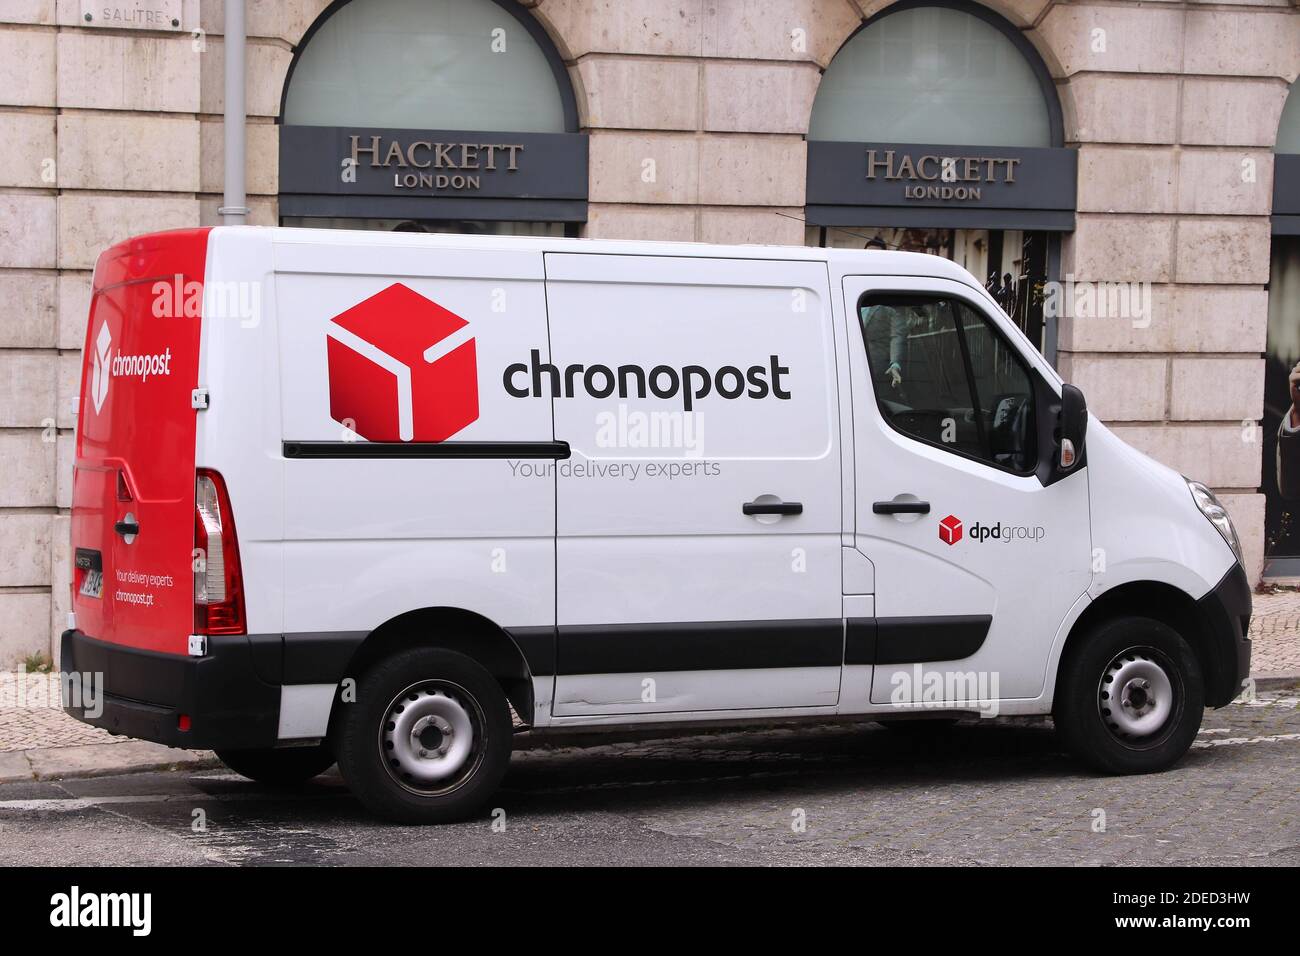 LISBOA, PORTUGAL - 6 DE JUNIO de 2018: Chronopost van de entrega en Lisboa,  Portugal. Chronopost es parte de la compañía postal del grupo DPD  Fotografía de stock - Alamy